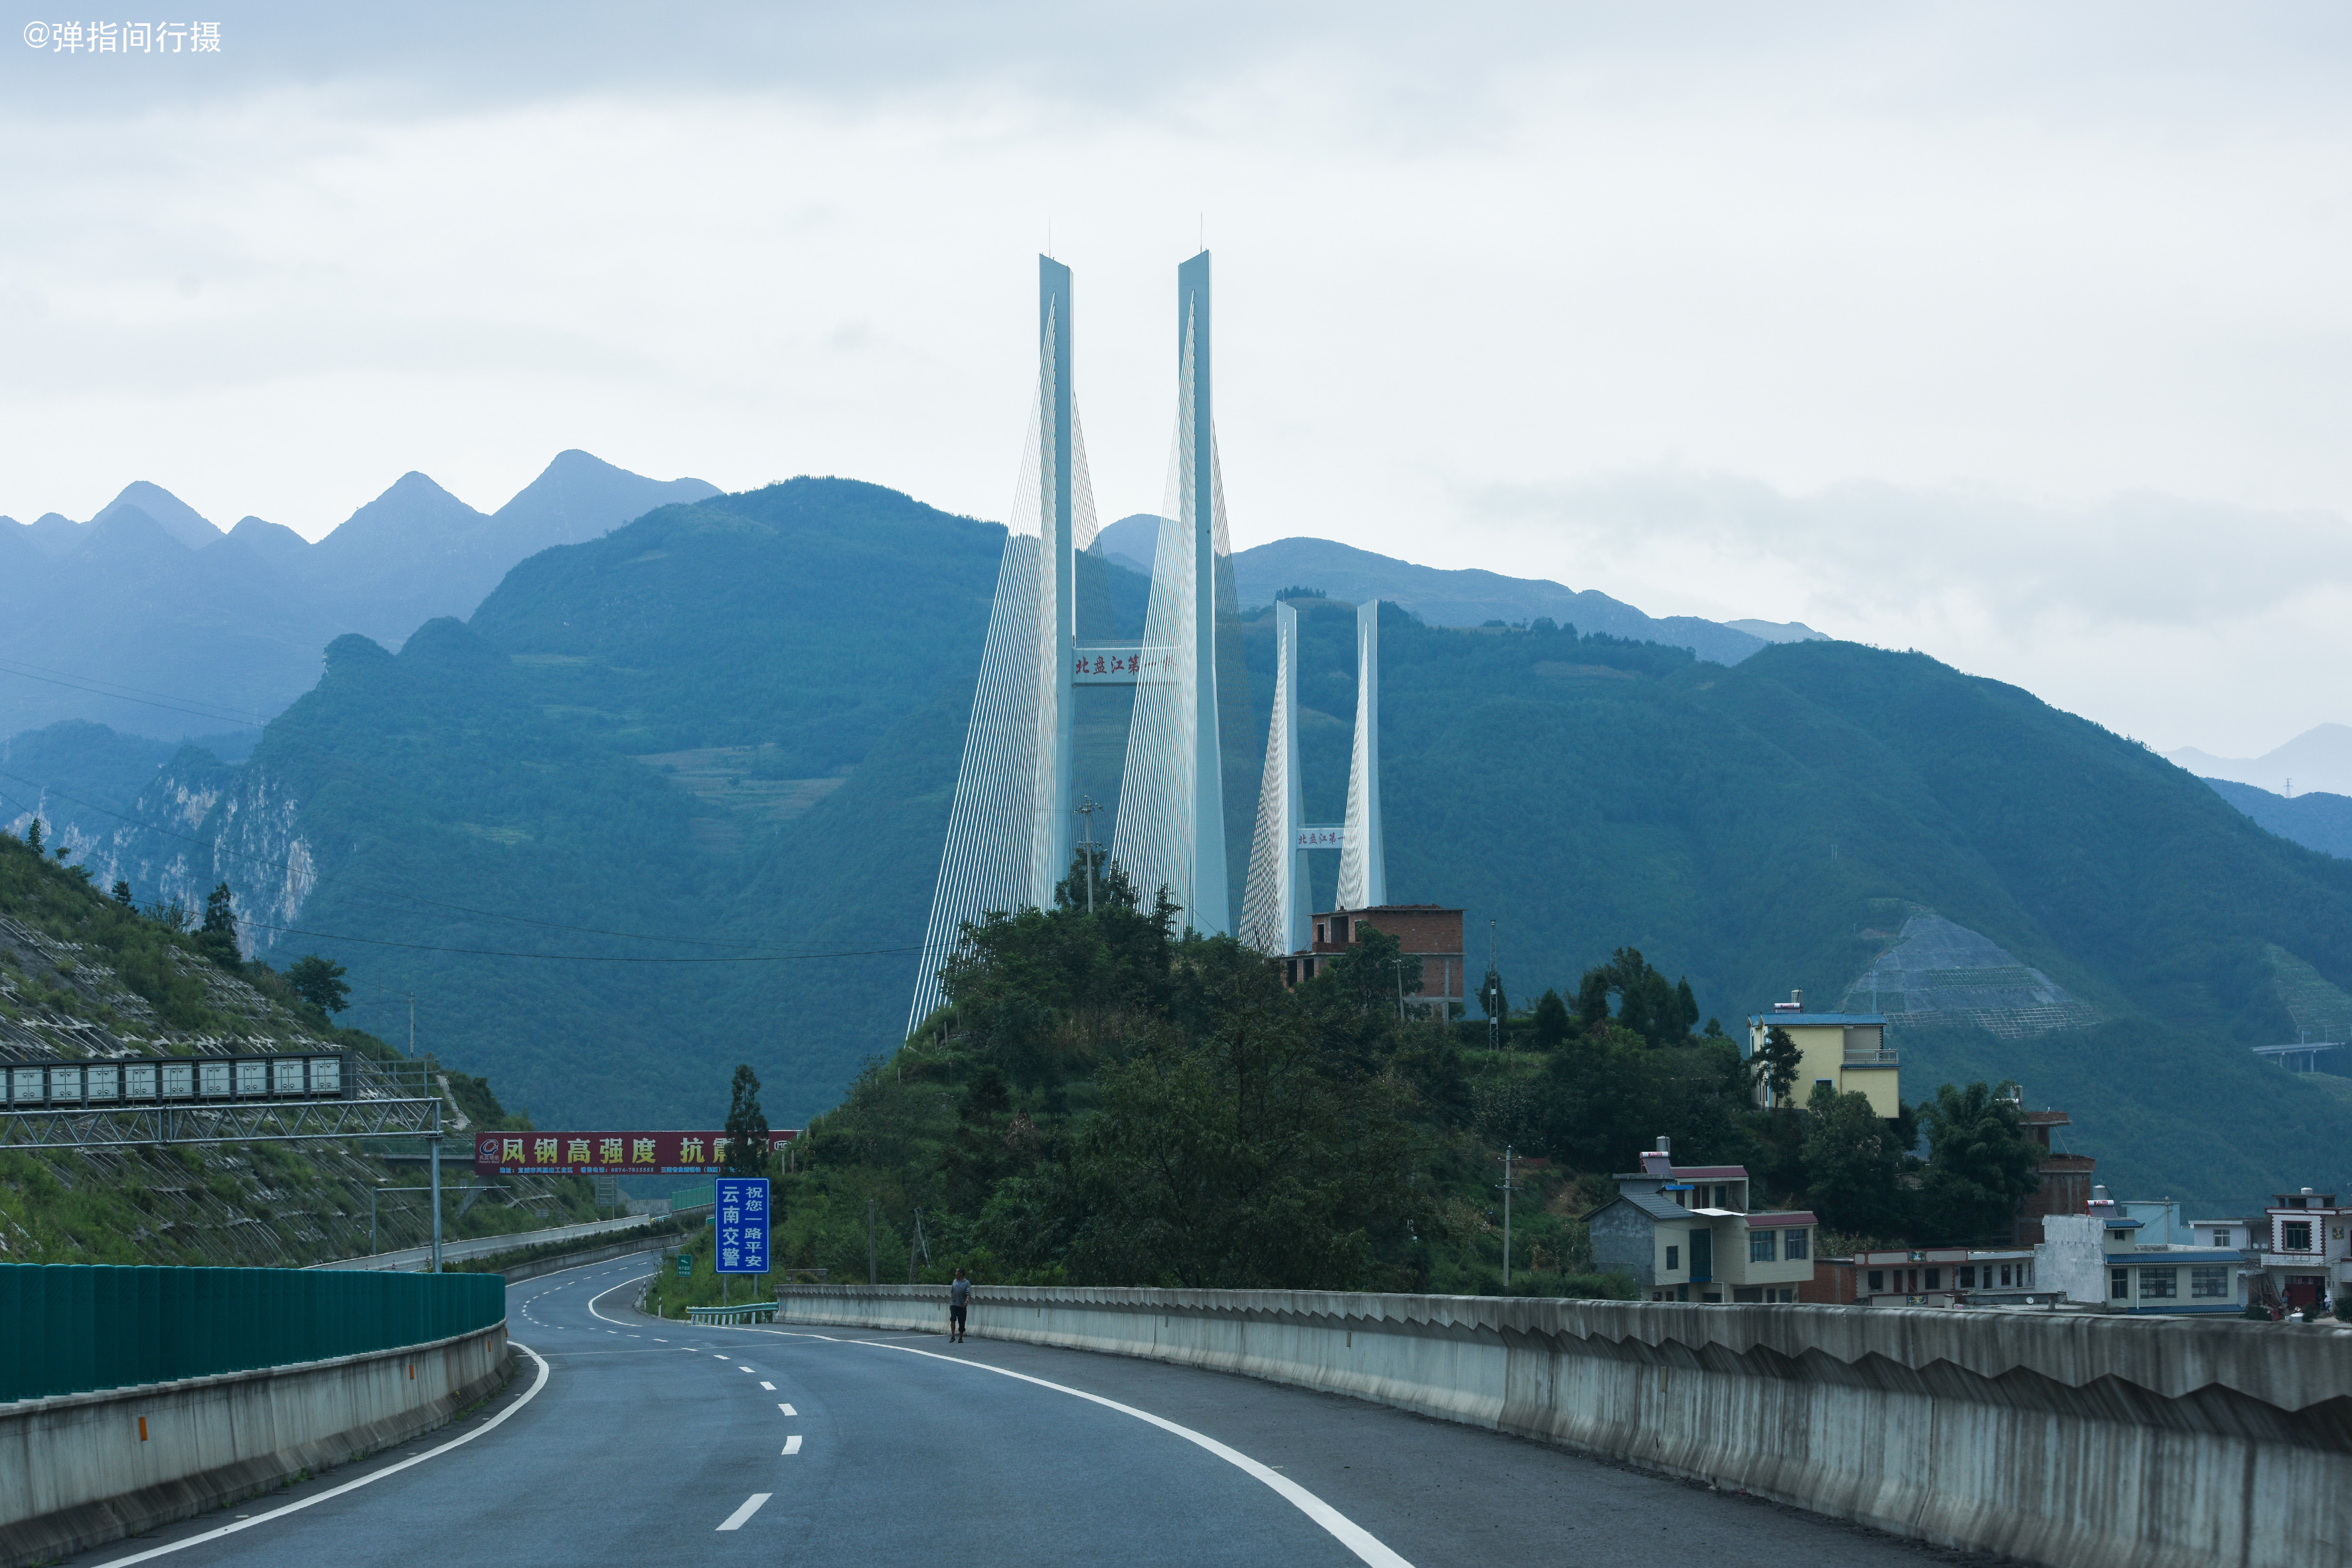 世界第一高的北盘江大桥,垂直高度达565米,横跨贵州和云南两省